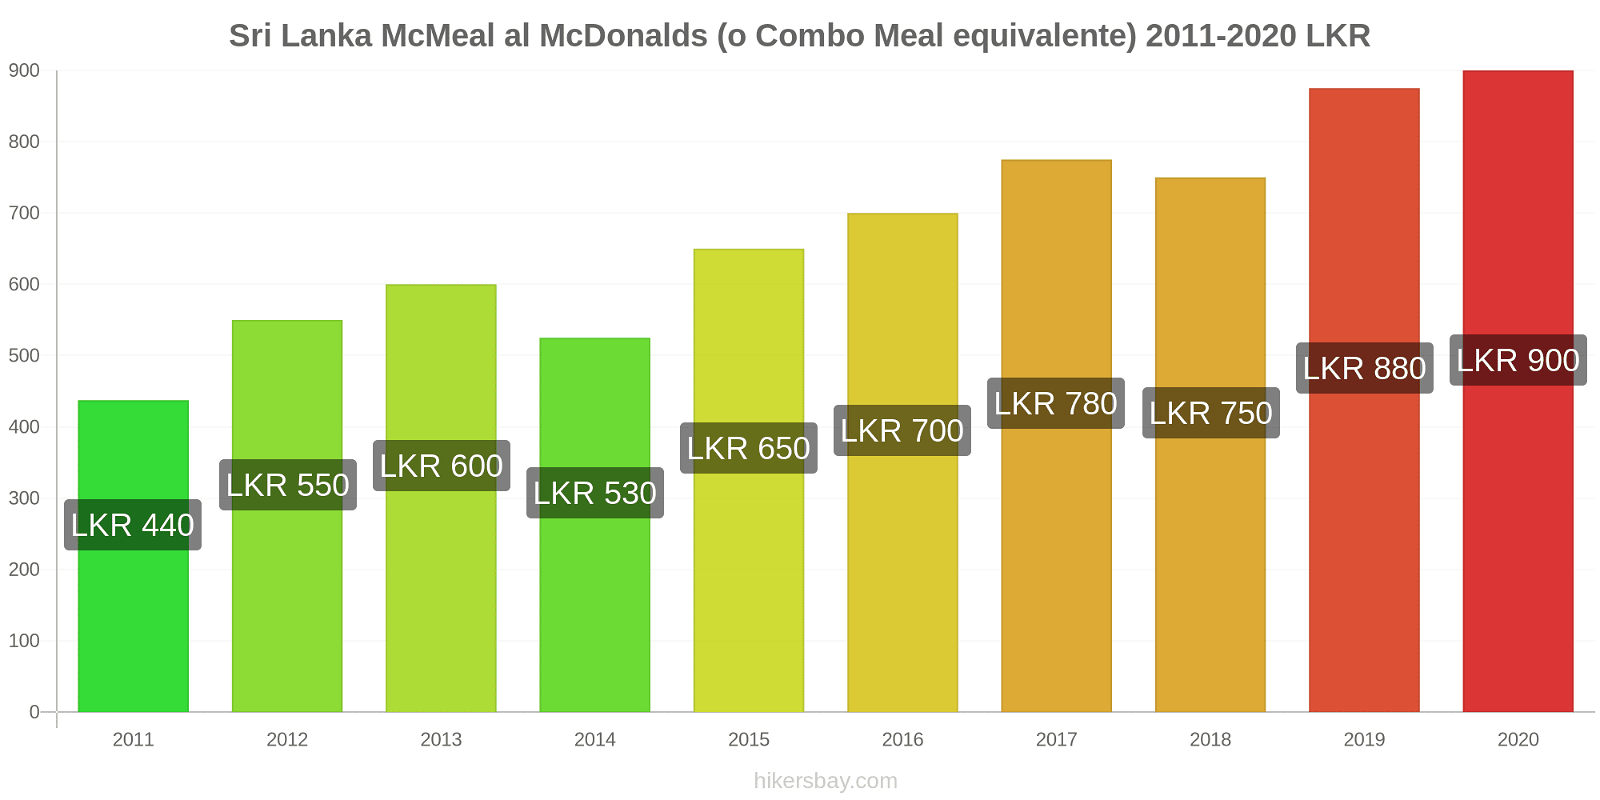 Sri Lanka variazioni di prezzo McMeal al McDonalds (o in un equivalente fastfood) hikersbay.com